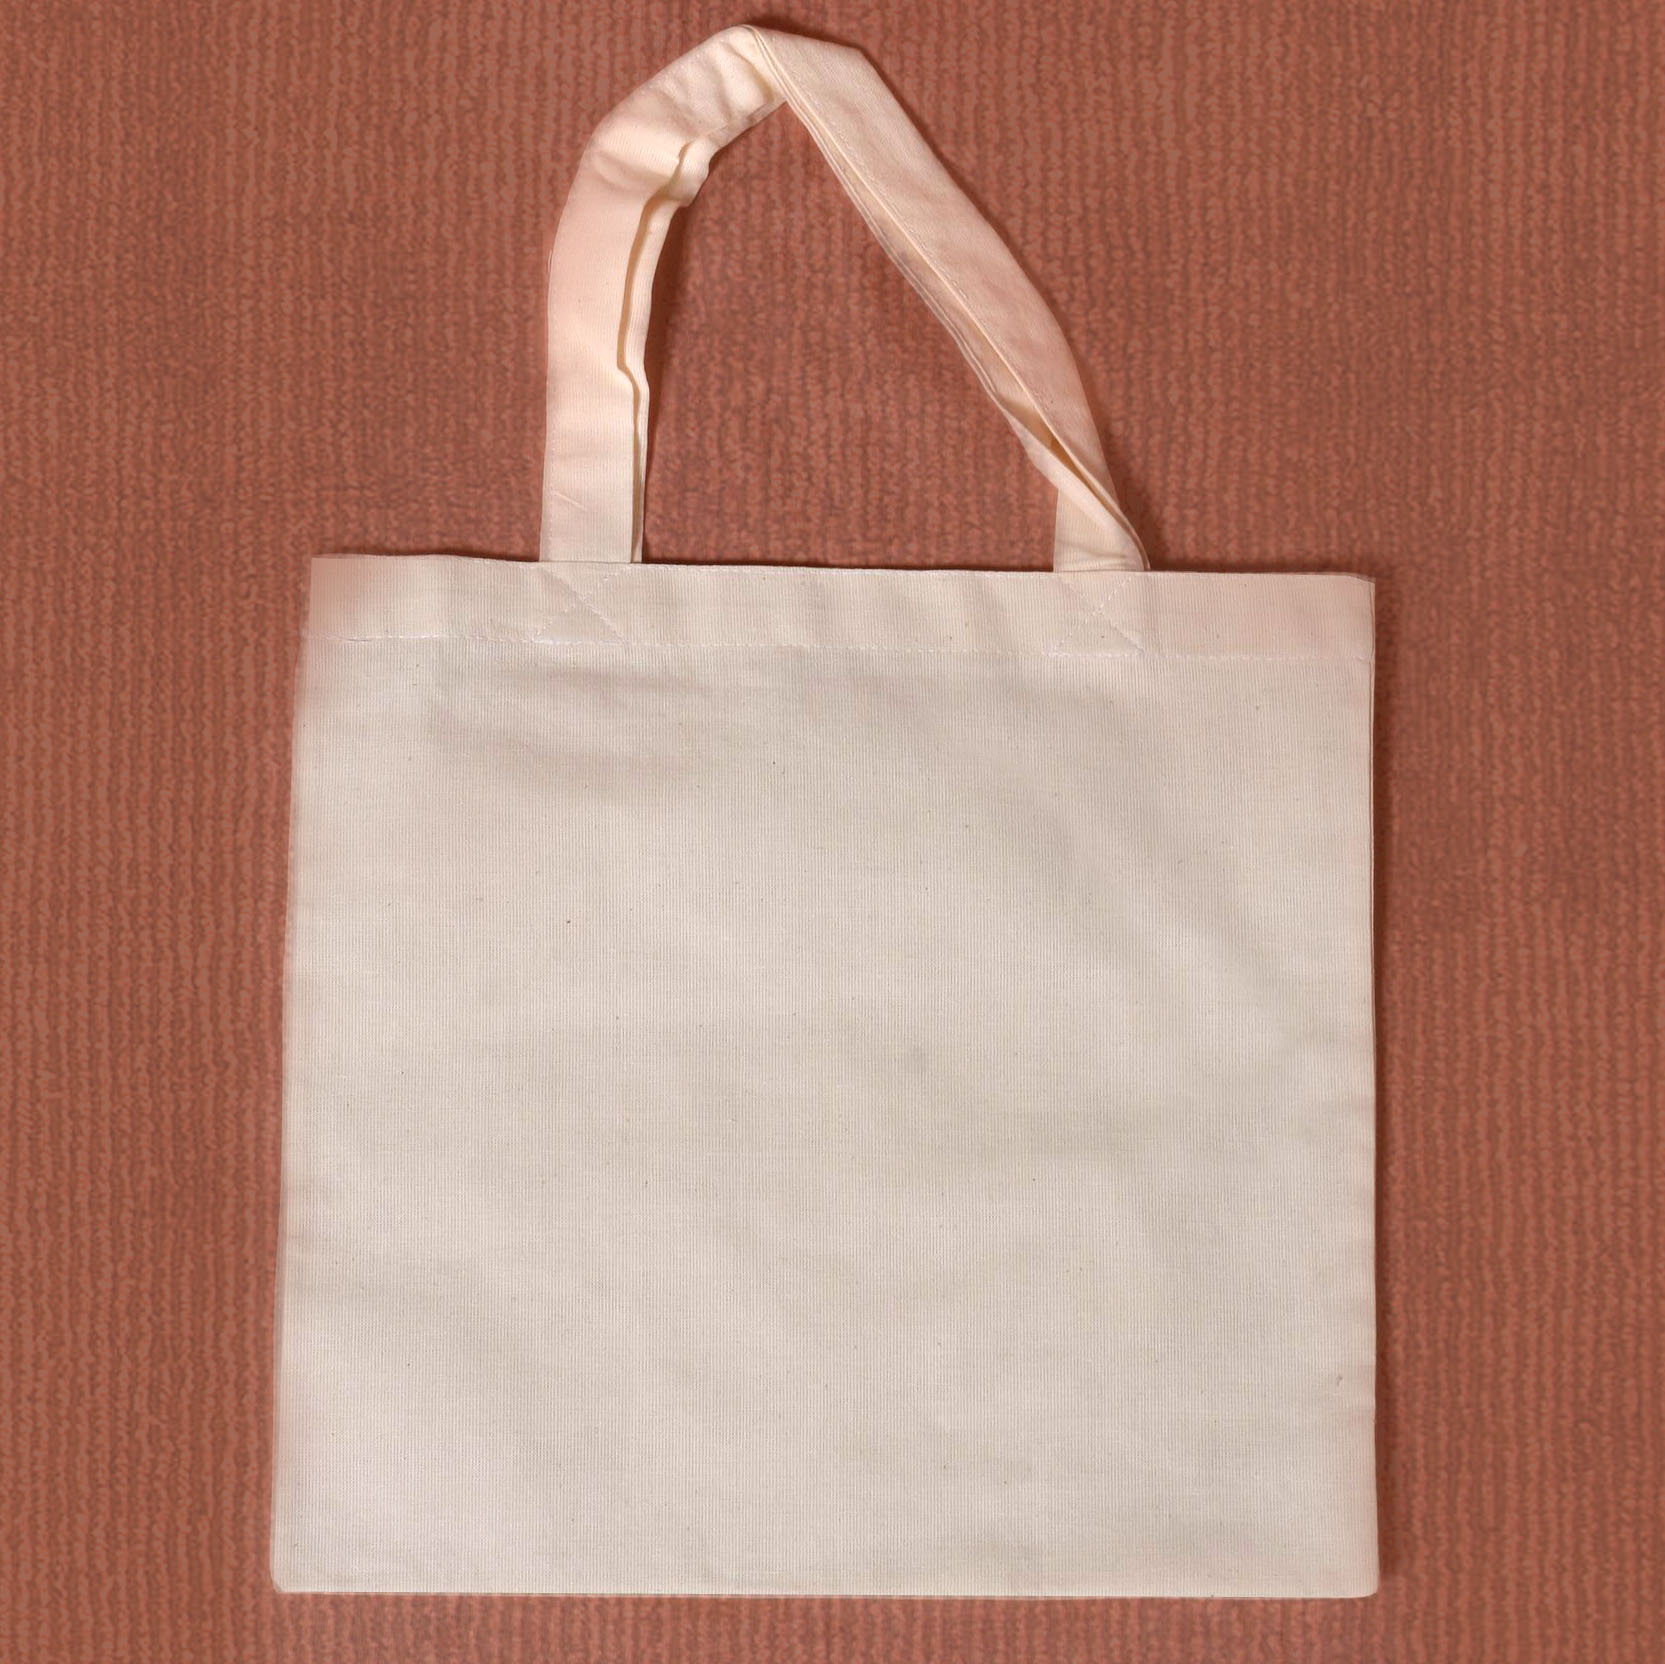 Bavlněná taška s ručkou - 29 x 29 cm bavlněné textilní polotovary